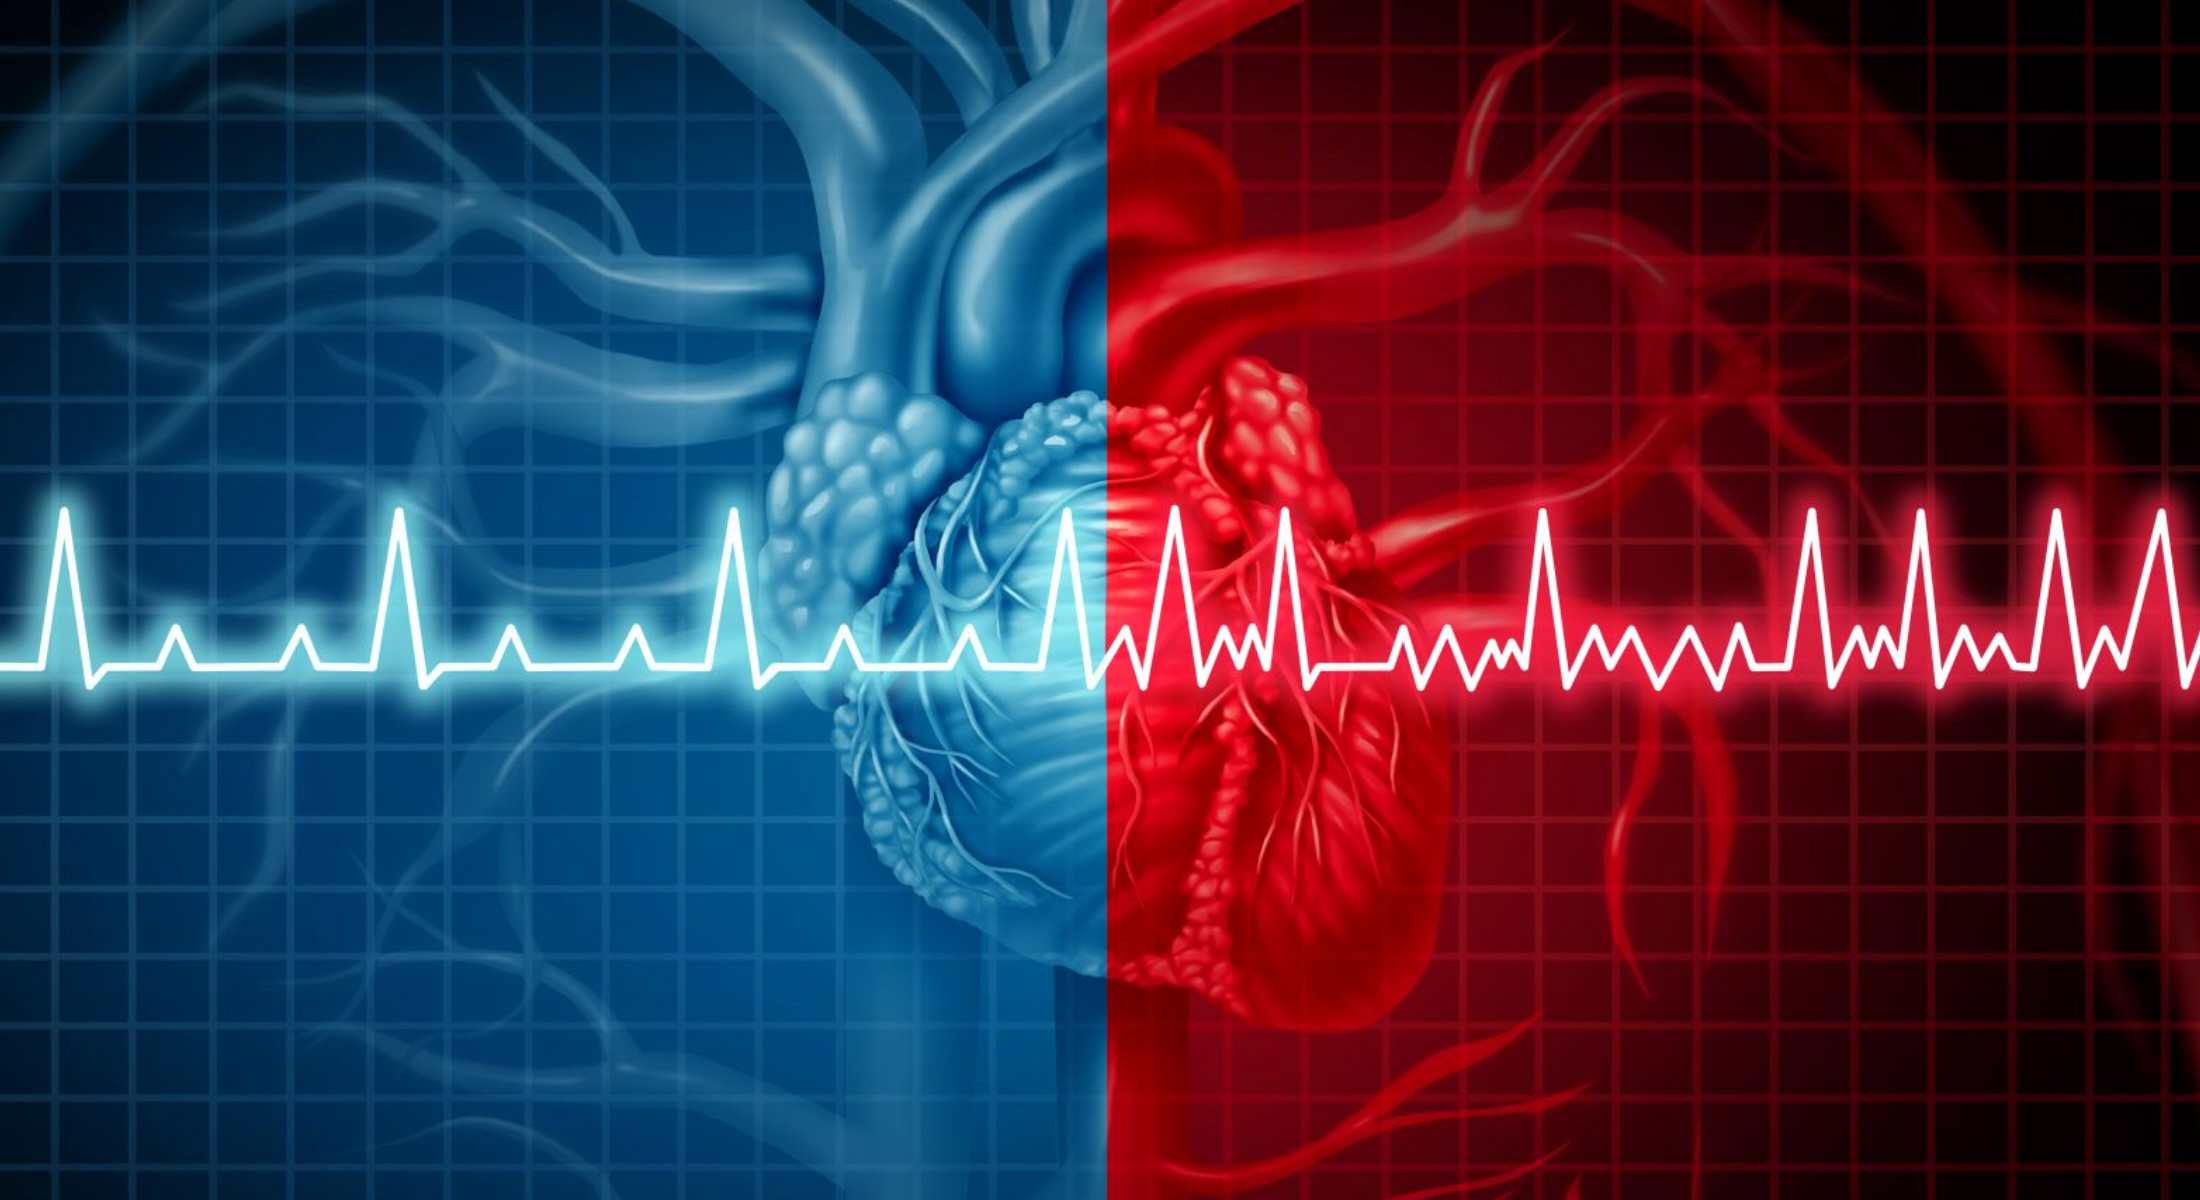 Σύστημα τεχνητής νοημοσύνης ανιχνεύει τα καρδιαγγειακά νοσήματα